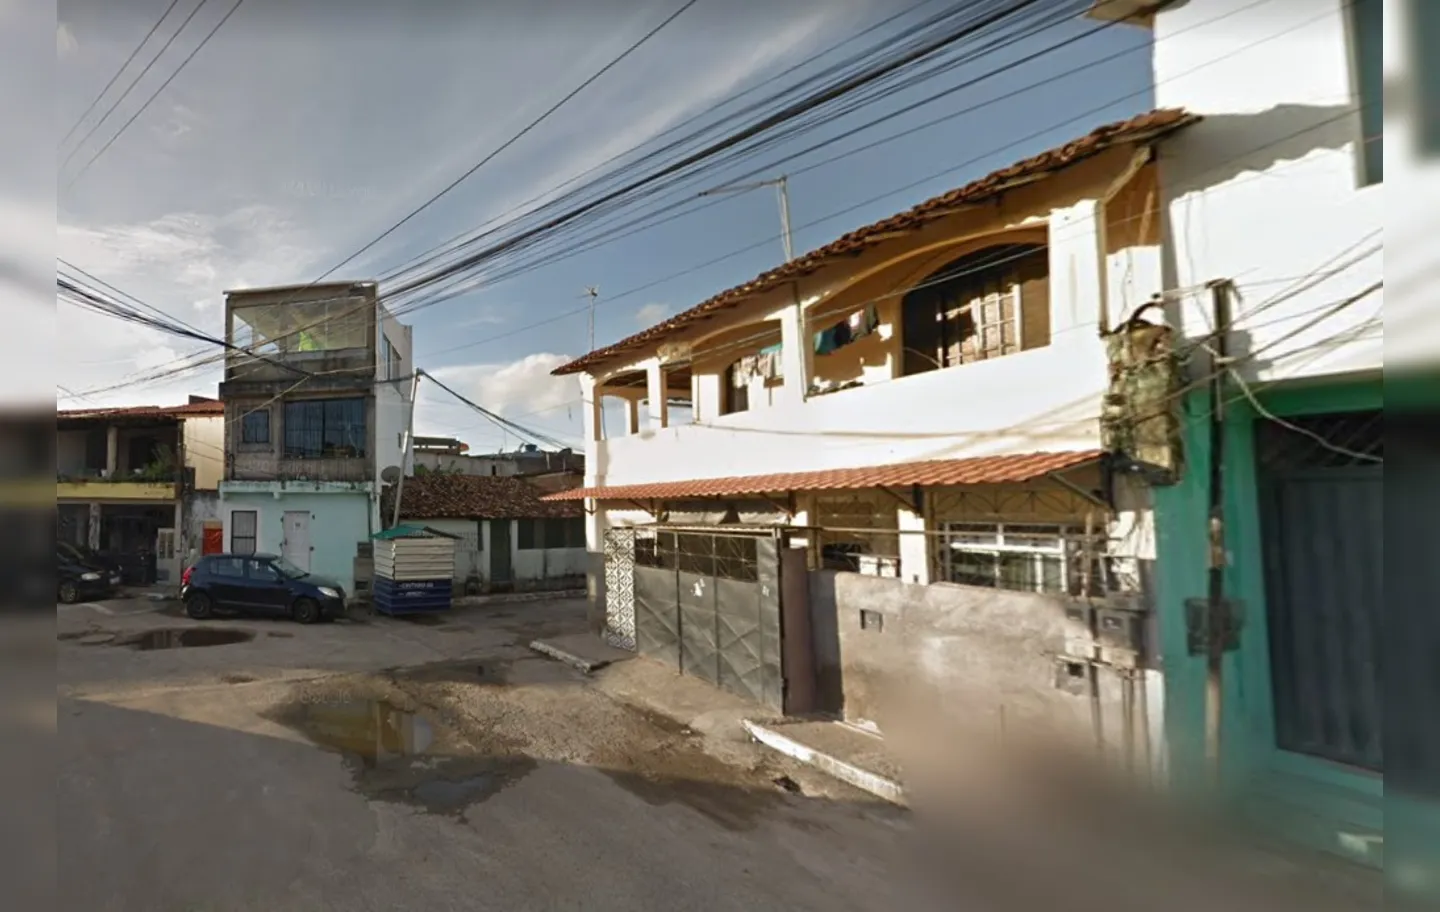 Localidade conhecida como Planeta dos Macacos é palco de disputas do tráfico | Foto: Reprodução | Google Street View